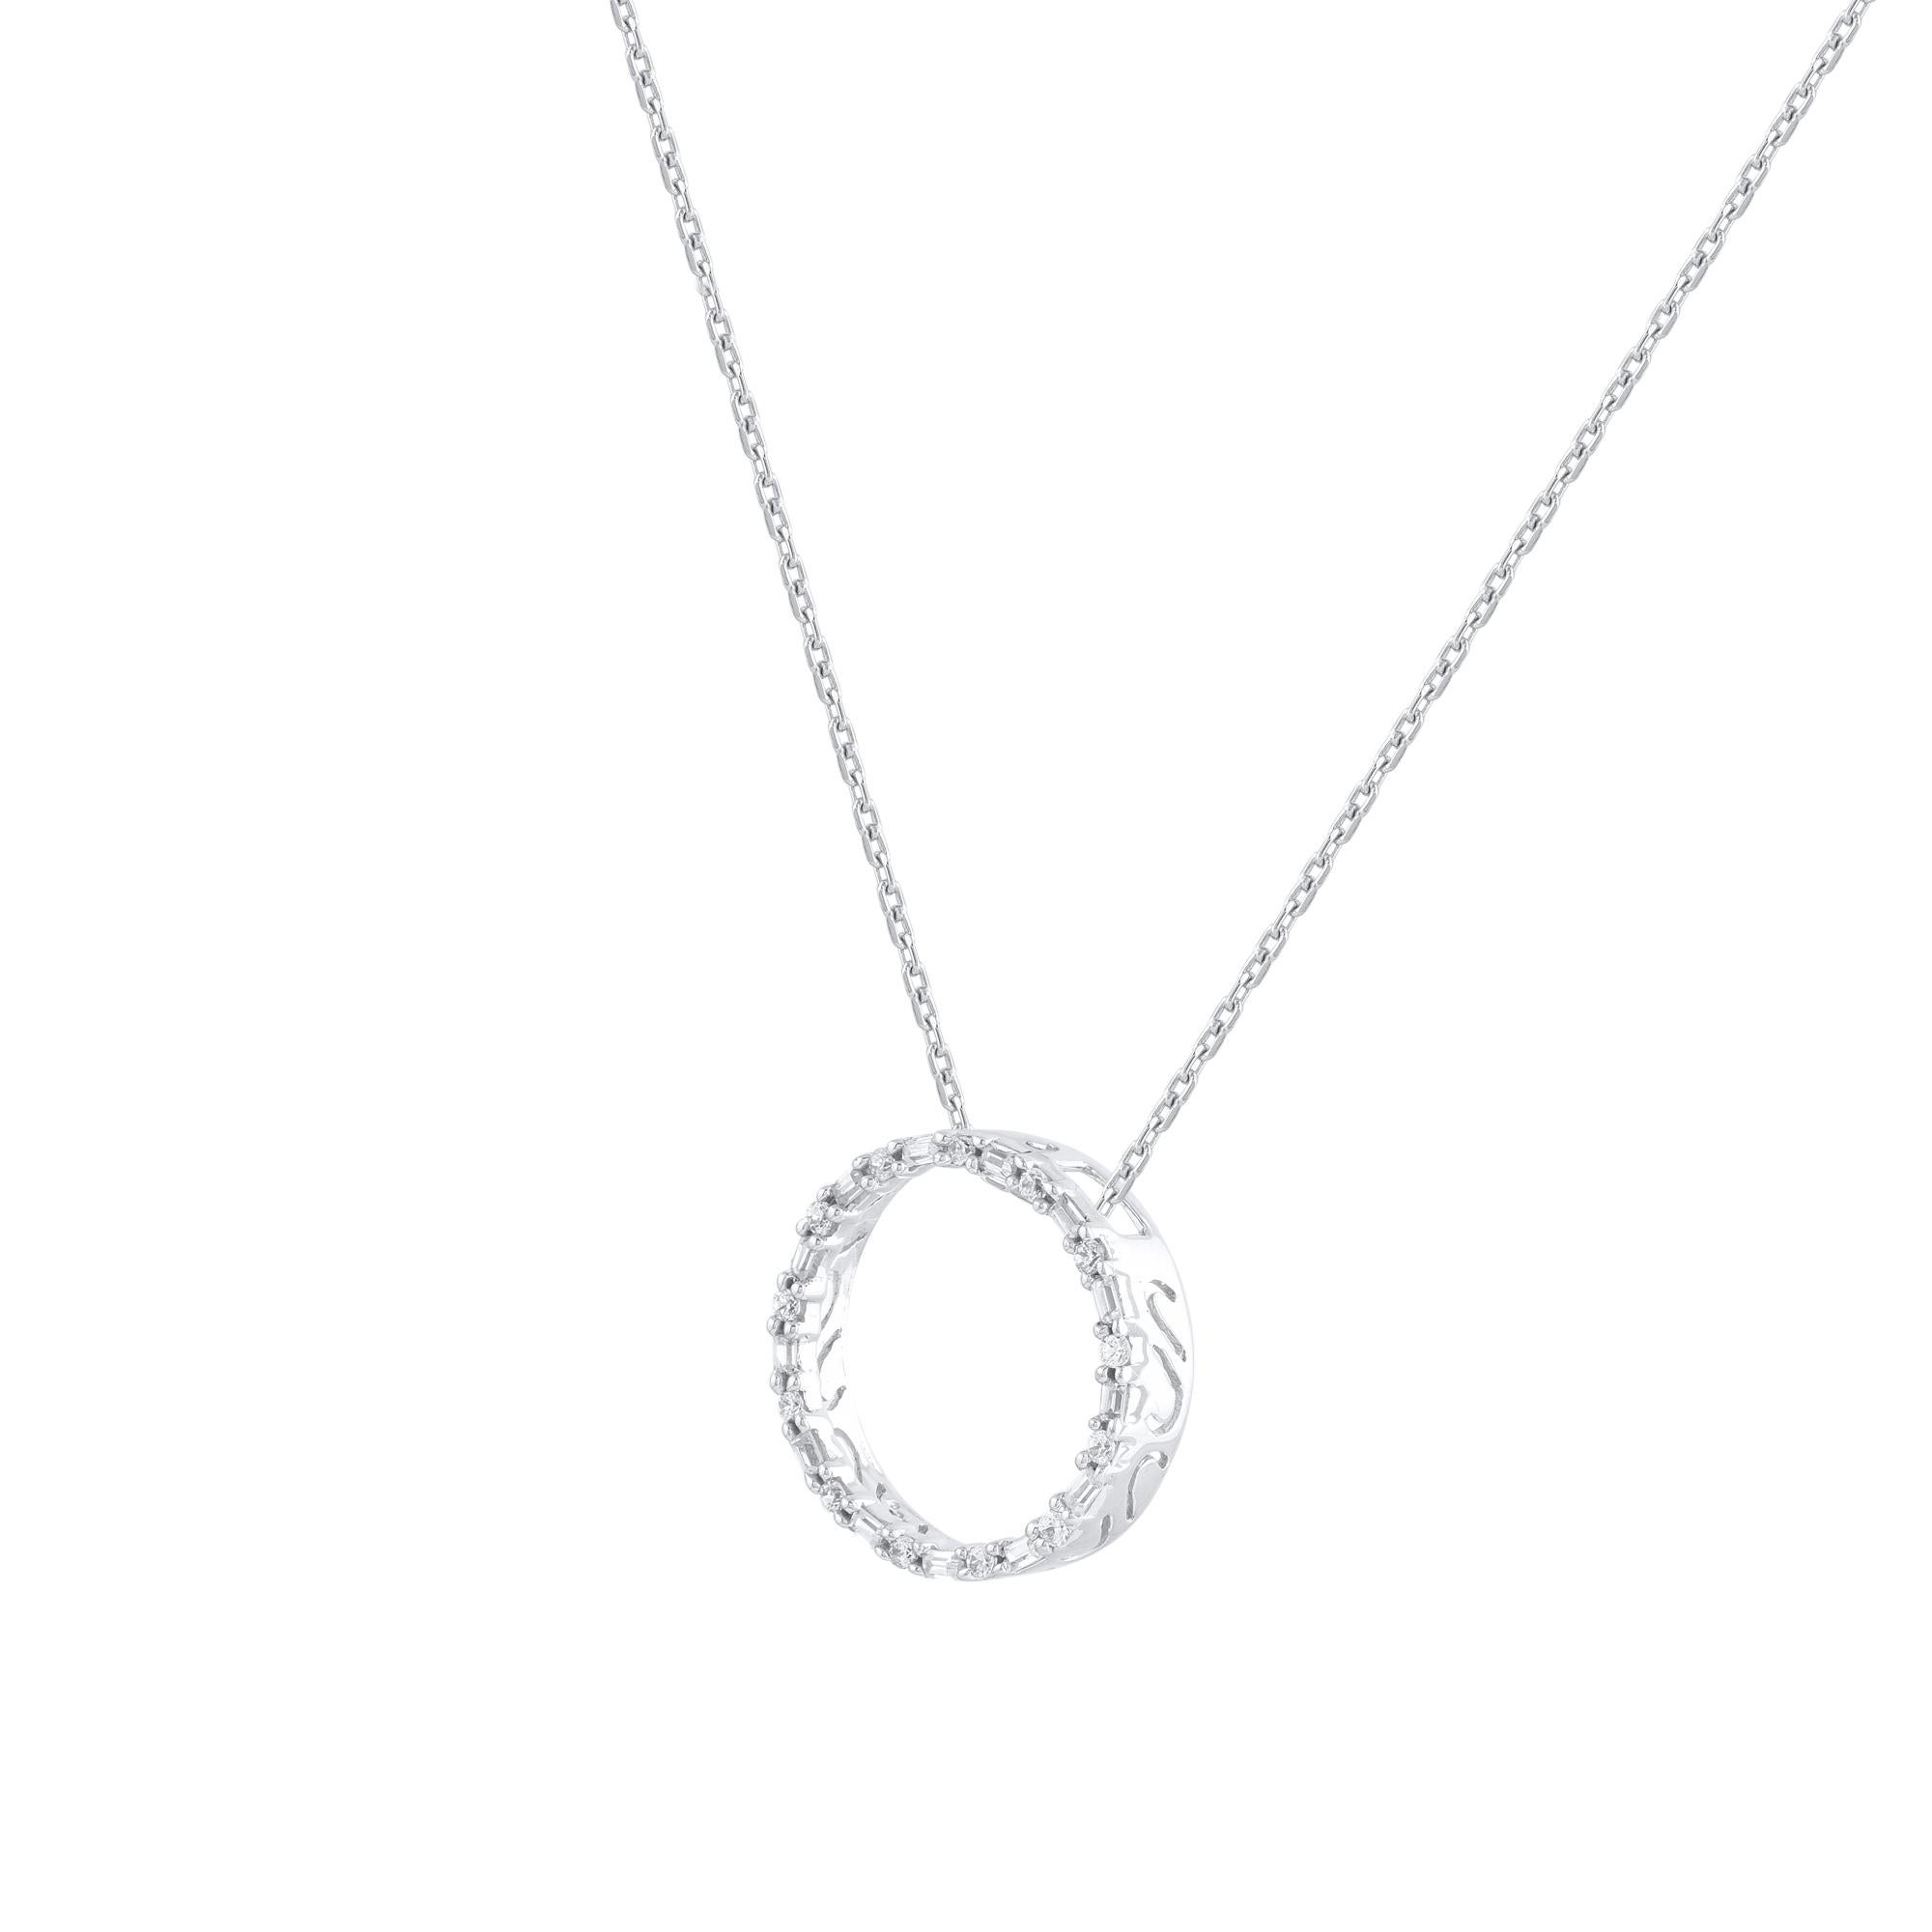 Ce pendentif d'éternité en forme de cercle ouvert et orné de diamants s'adapte facilement à toutes les occasions. Ces pendentifs d'éternité sont ornés de 26 diamants naturels de taille brillant et baguette, sertis en ruban et en canal en or blanc 14